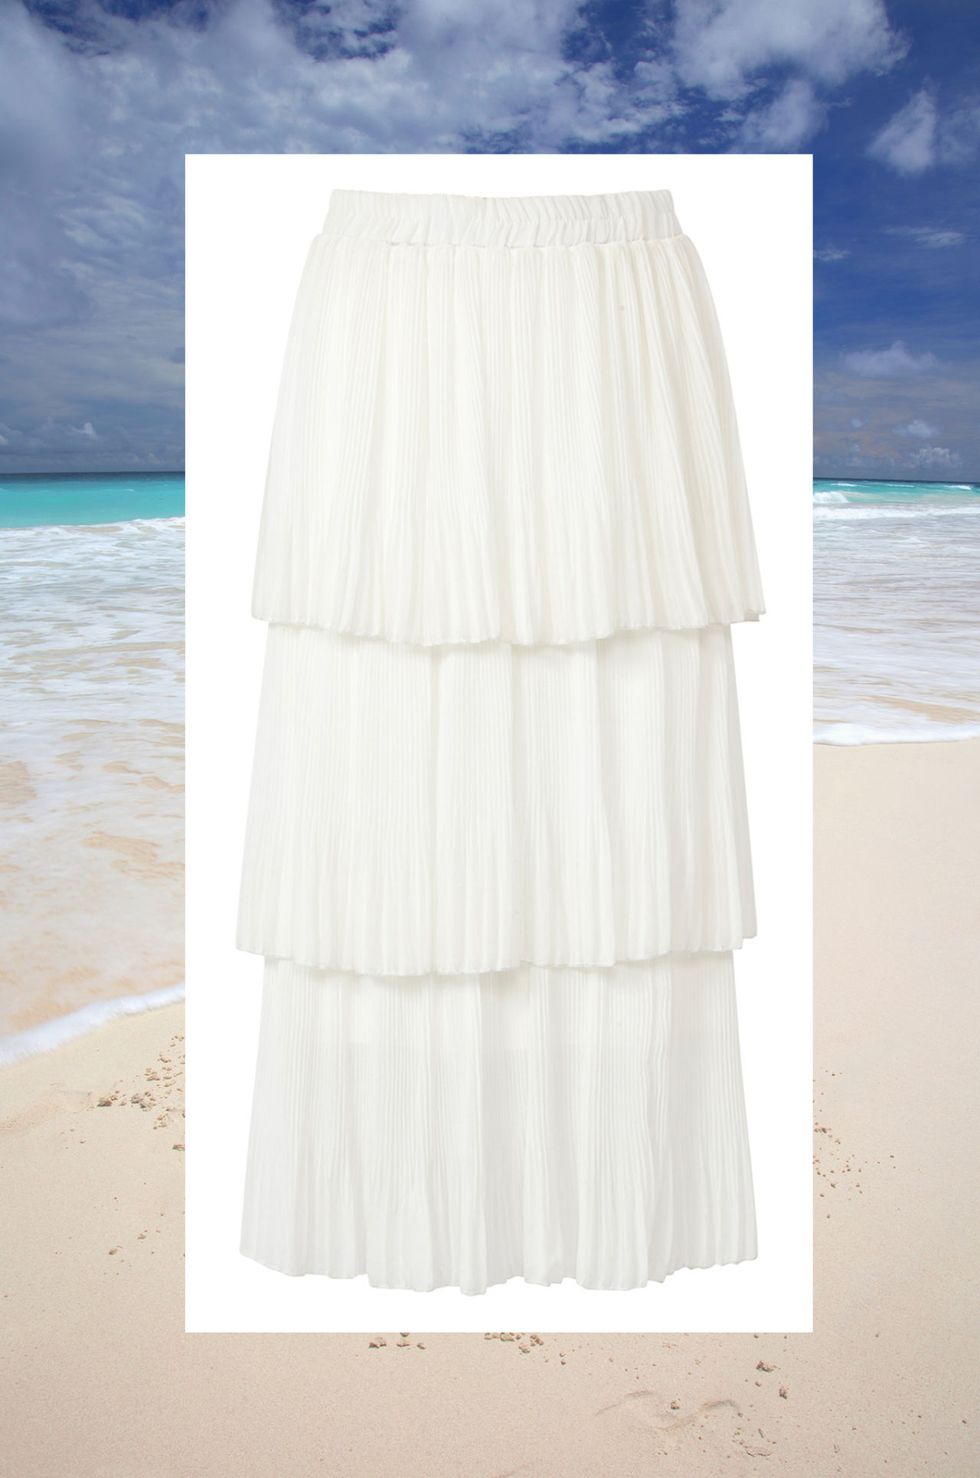 Hai deciso di sposarti in riva al mare: per un matrimonio in spiaggia occorre un abito da sposa che sia in sintonia con lo scenario,vento incluso.